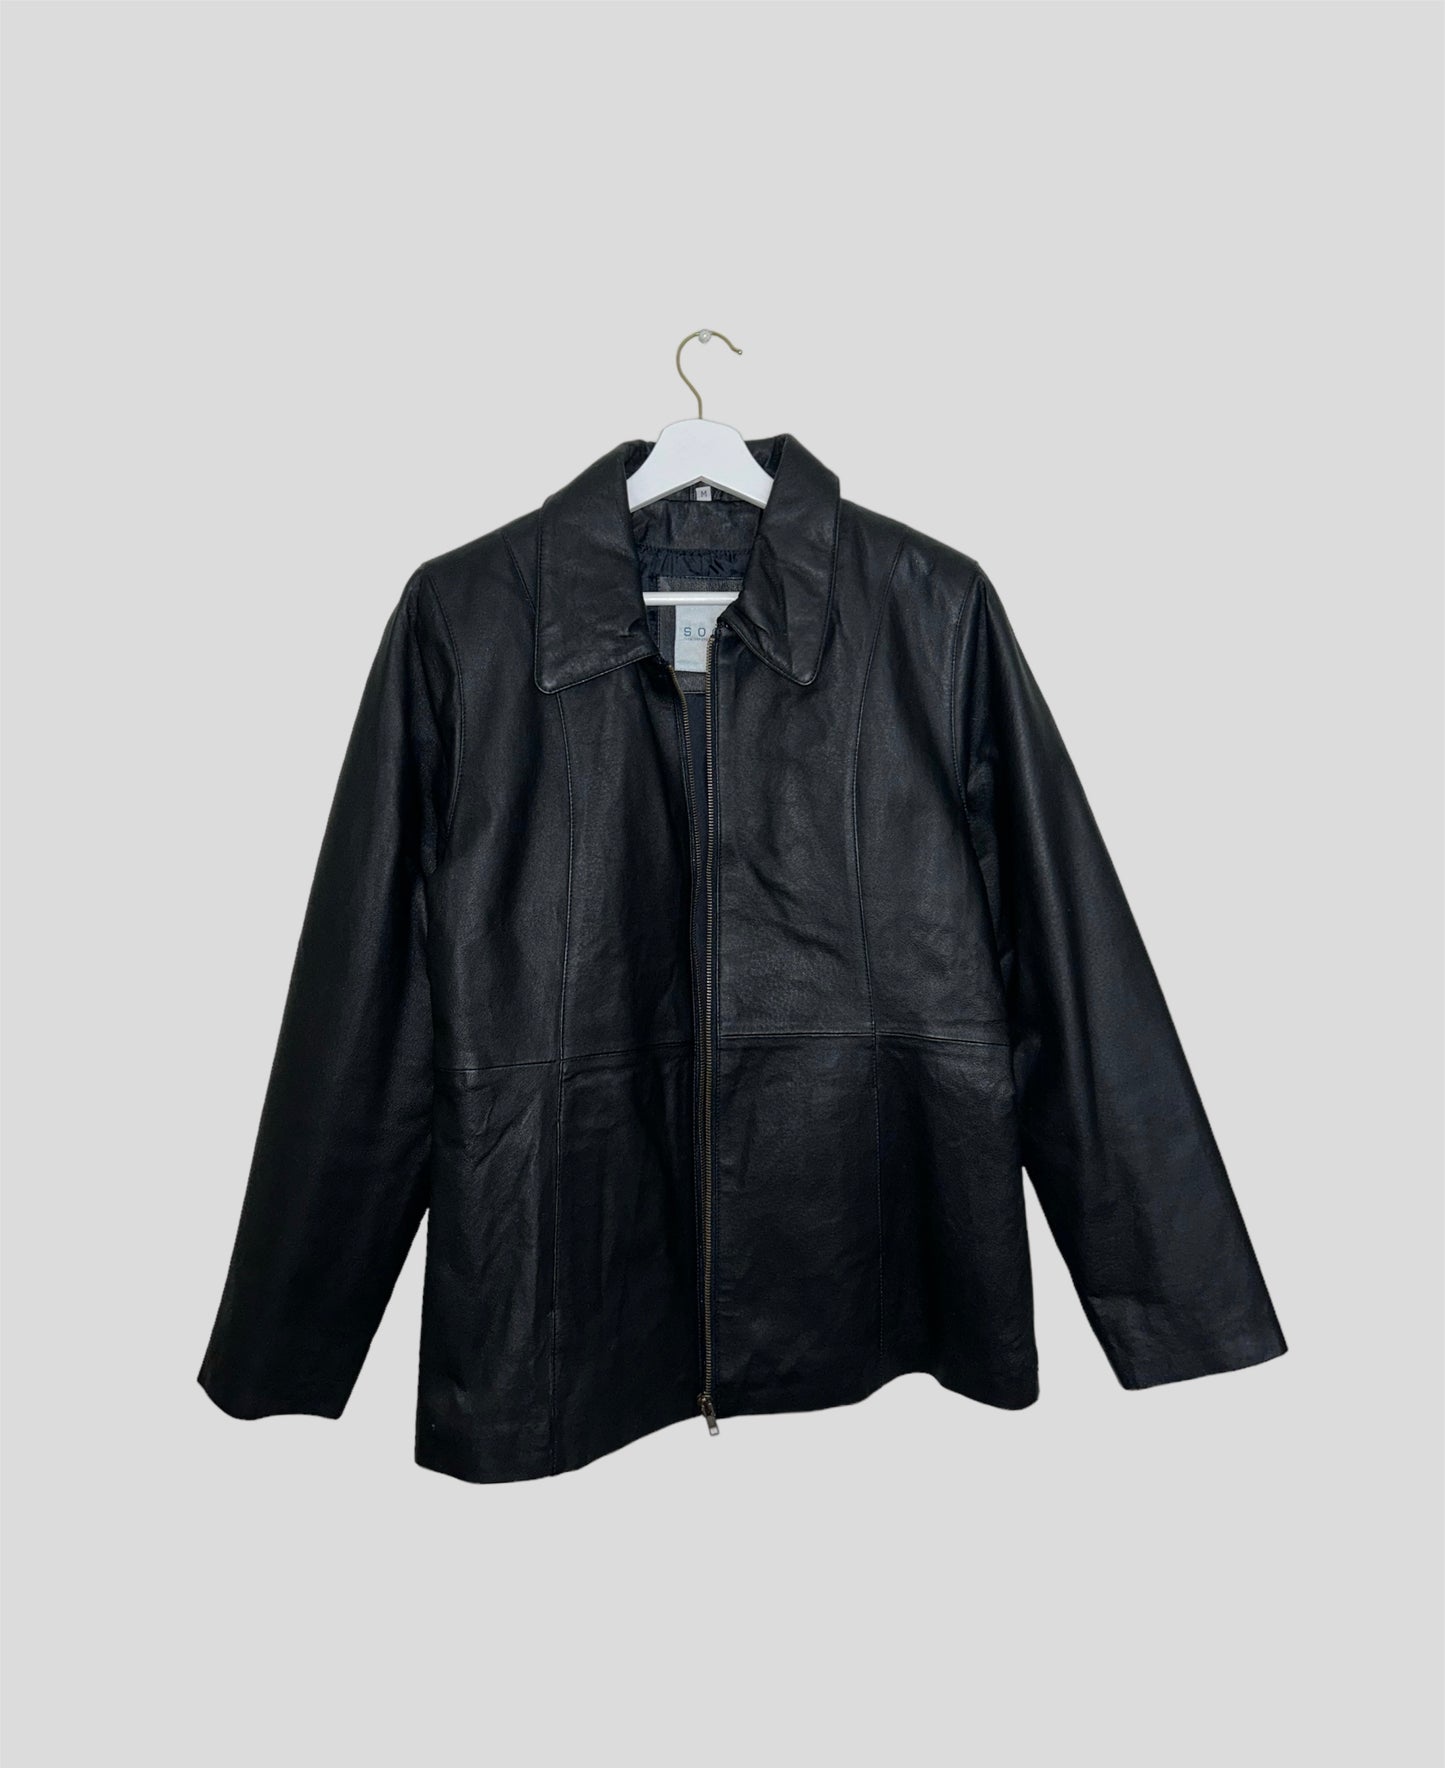 black zip up leather bomber jacket